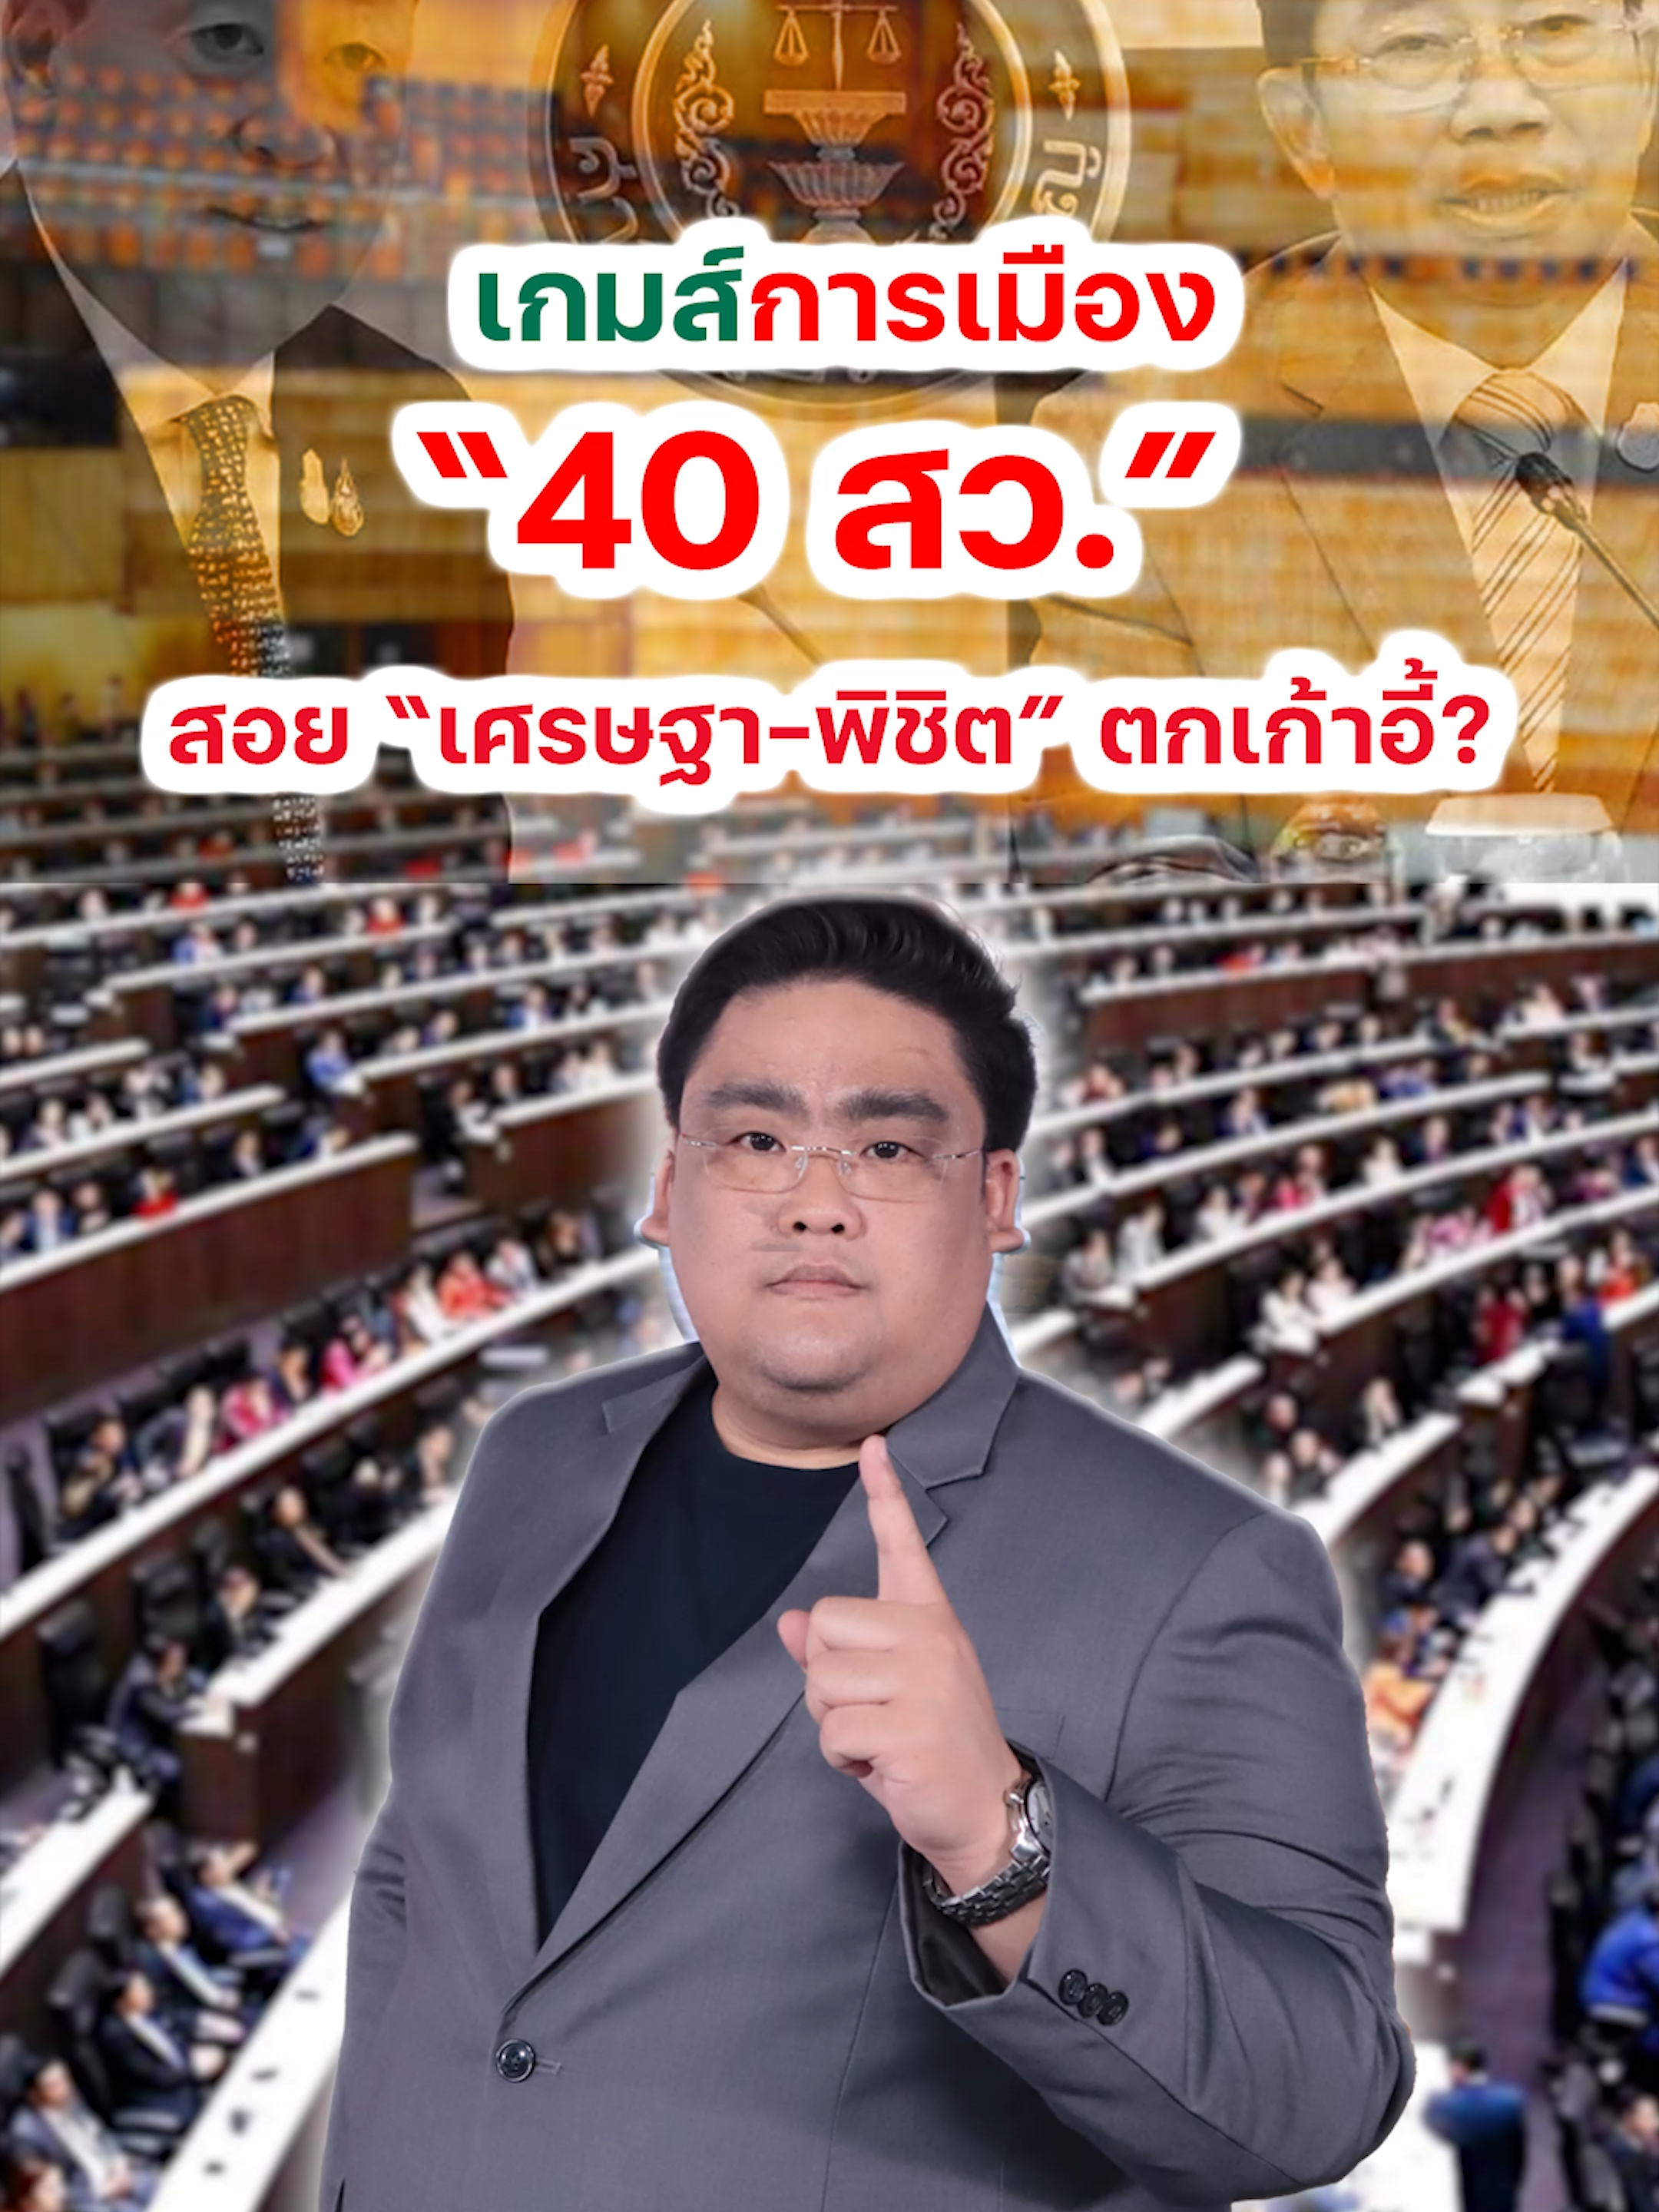 วิเคราะห์เกมการเมือง “40 สว.” สอย “เศรษฐา-พิชิต” ตกเก้าอี้?   #ข่าวการเมือง #การเมือง #รัฐบาลไทย #คณะรัฐมนตรี #พิชิตชื่นบาน #หุ้นเด่น #หุ้นไทยห #ข่าวหุ้น #ข่าวหุ้นธุรกิจออนไลน์ #ข่าวtiktok #kaohoon #kaohoononline